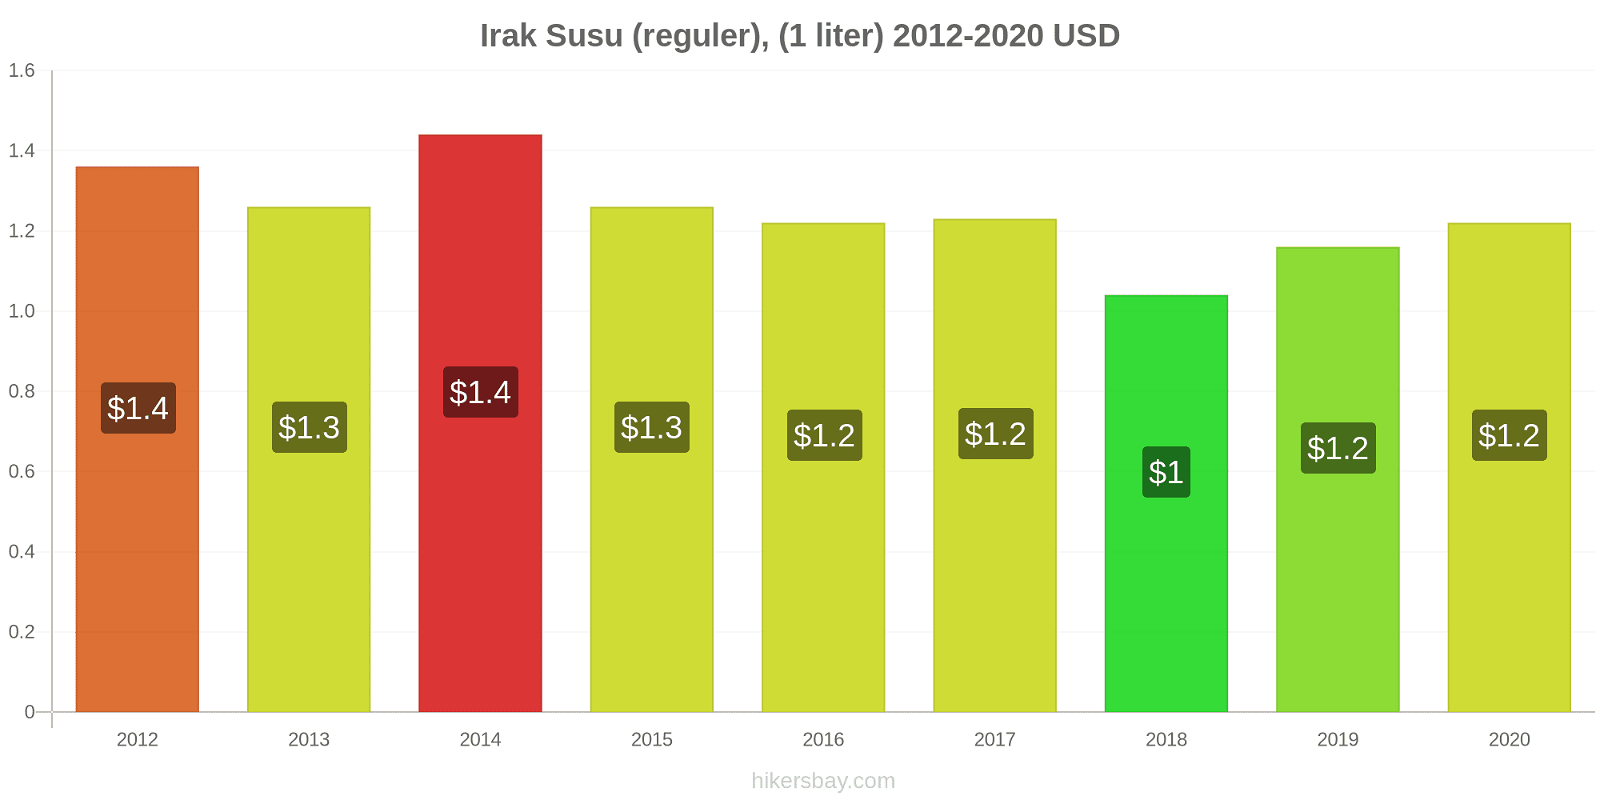 Irak perubahan harga Susu (reguler), (1 liter) hikersbay.com